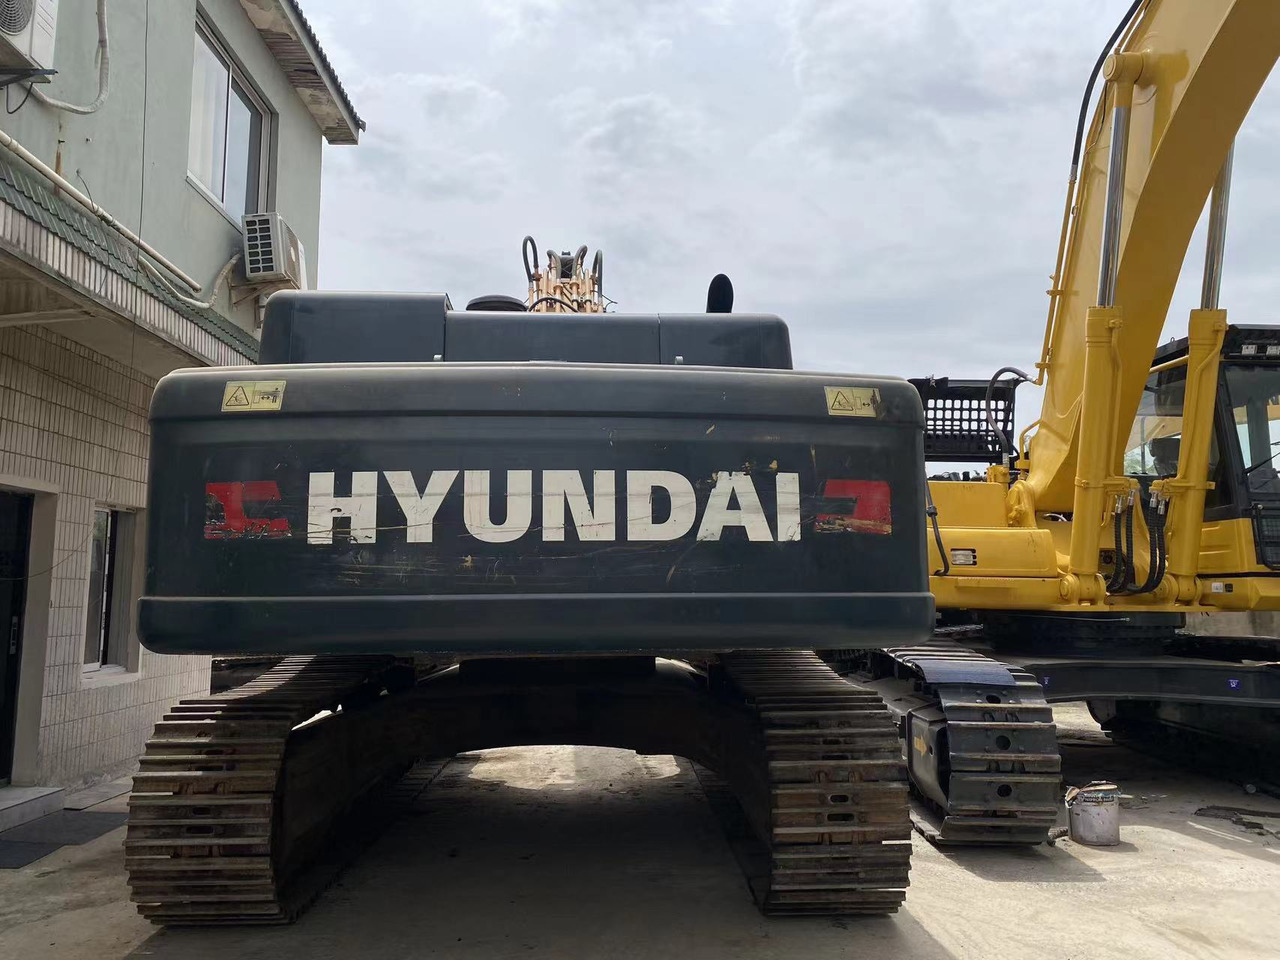 Ekskavator me zinxhirë Korea made HYUNDAI used excavator good condition R485LVS best service on sale: foto 3